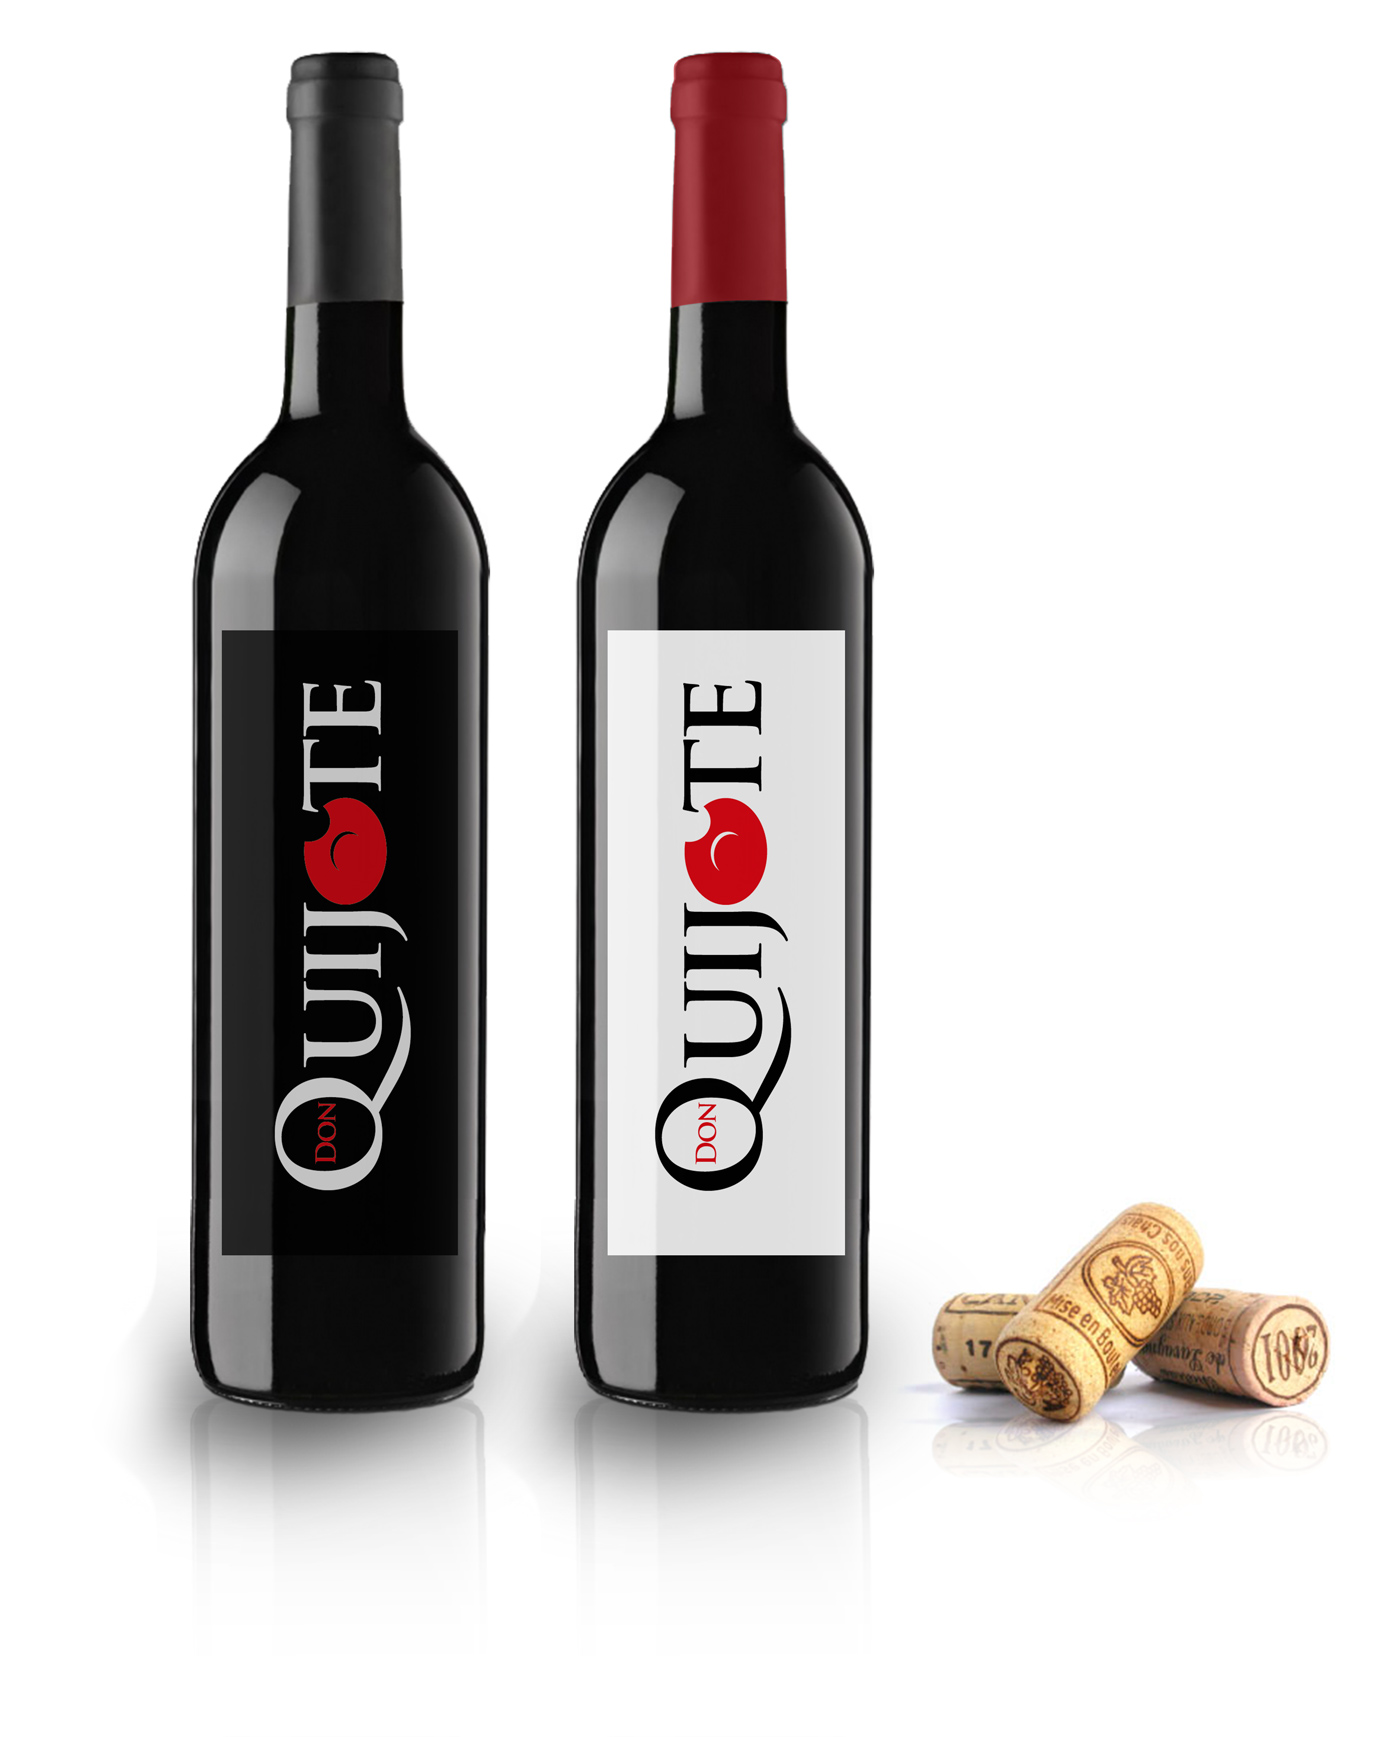 Creación de diseño de logo y marca corporativa para bodega de vinos DON QUIJOTE